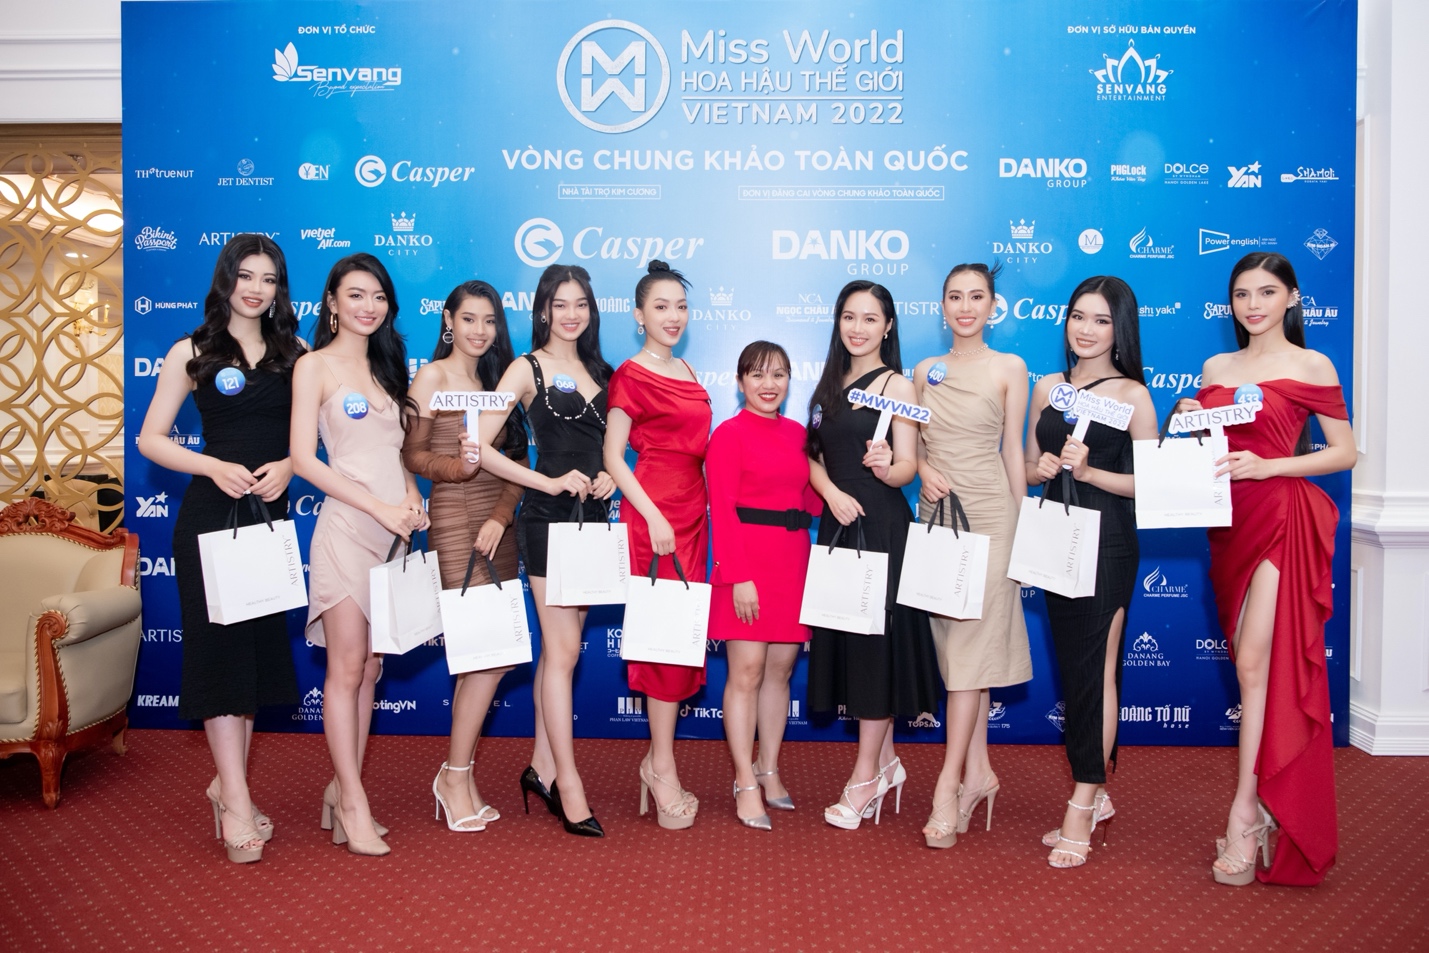 Artistry tiếp tục đồng hành cùng Miss World Vietnam 2022 nâng niu vẻ đẹp Việt - Ảnh 1.